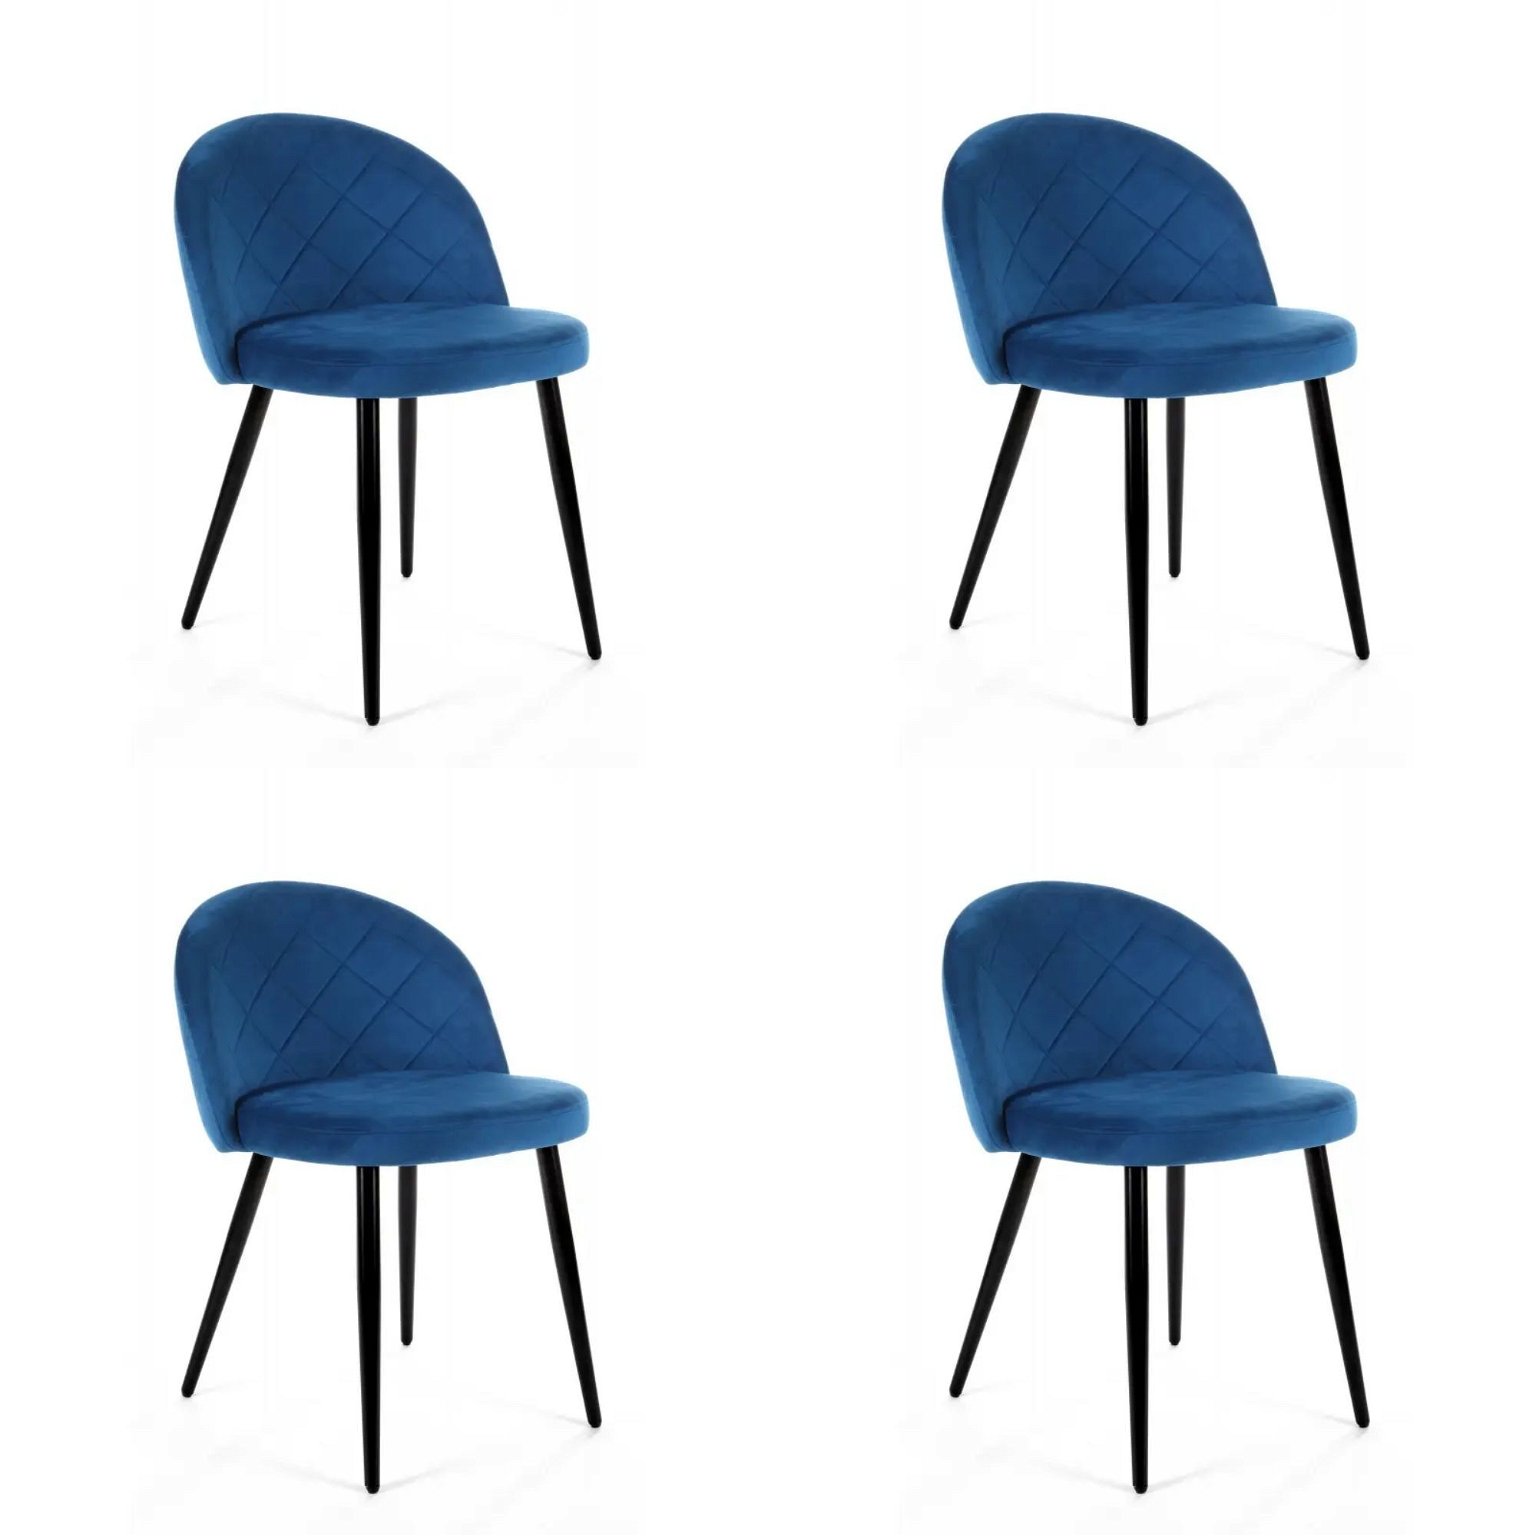 4-ių kėdžių komplaktas SJ.077, tamsiai mėlyna - 2